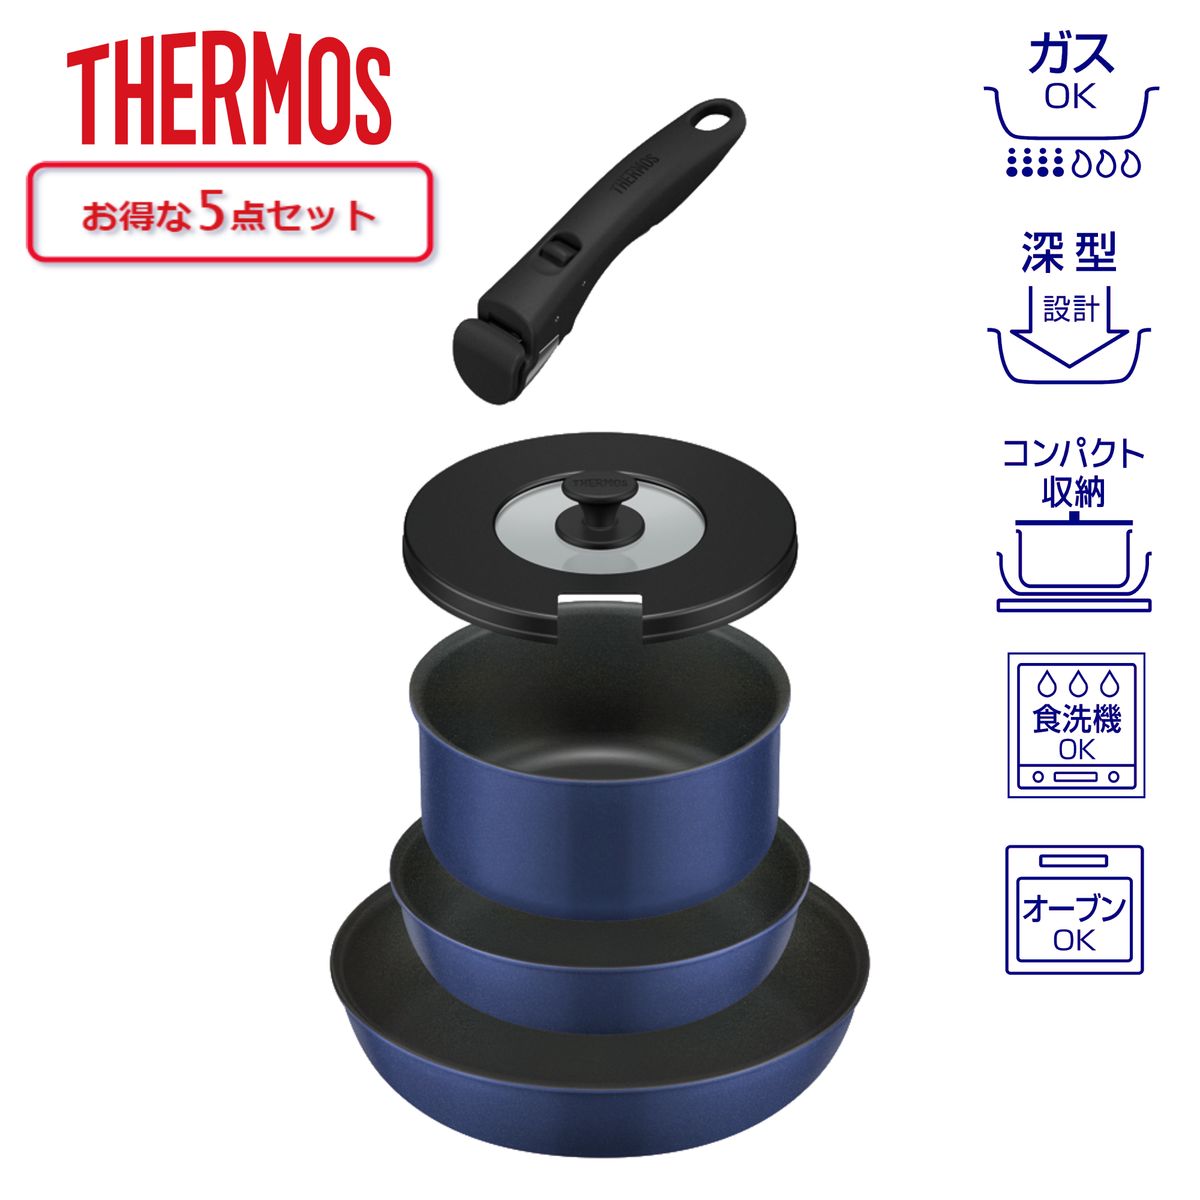 THERMOS 取っ手のとれるフライパン5点セット 蓋 付 着脱式取っ手 インディゴブルー ガス火専用 食洗器対応